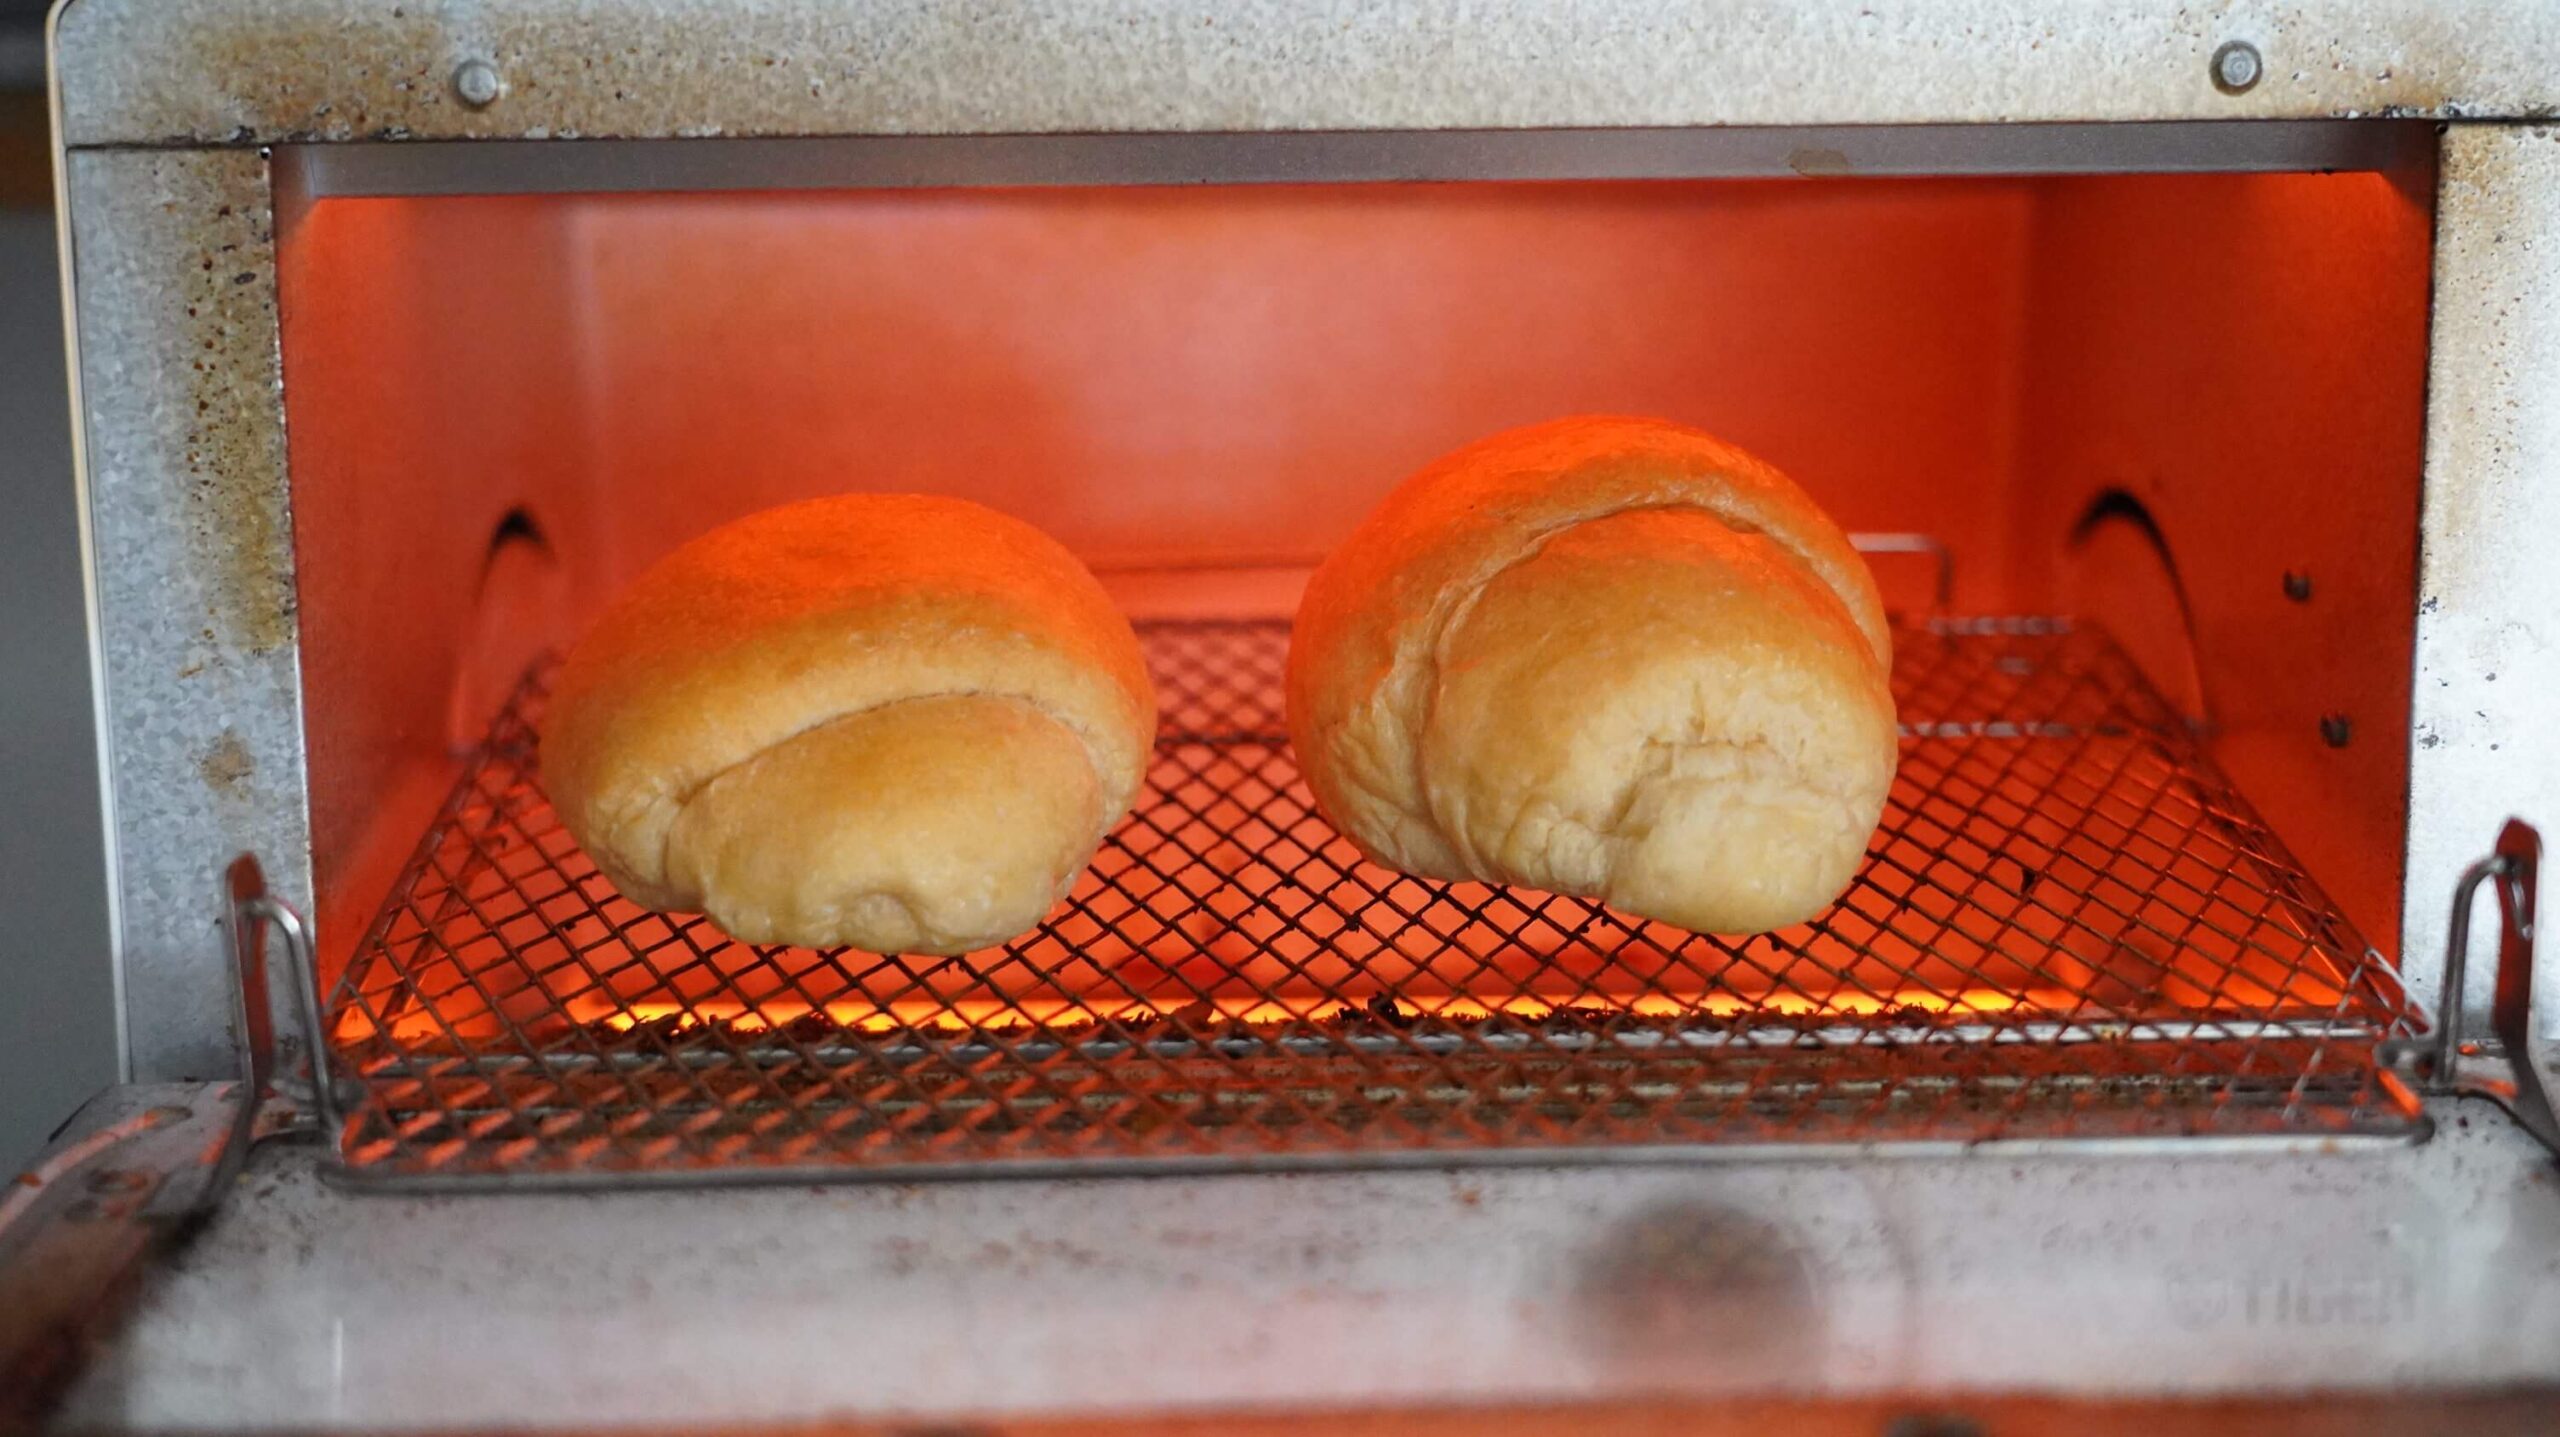 nosh（ナッシュ）の冷凍食品「バターロールパン」をオーブントースターの写真